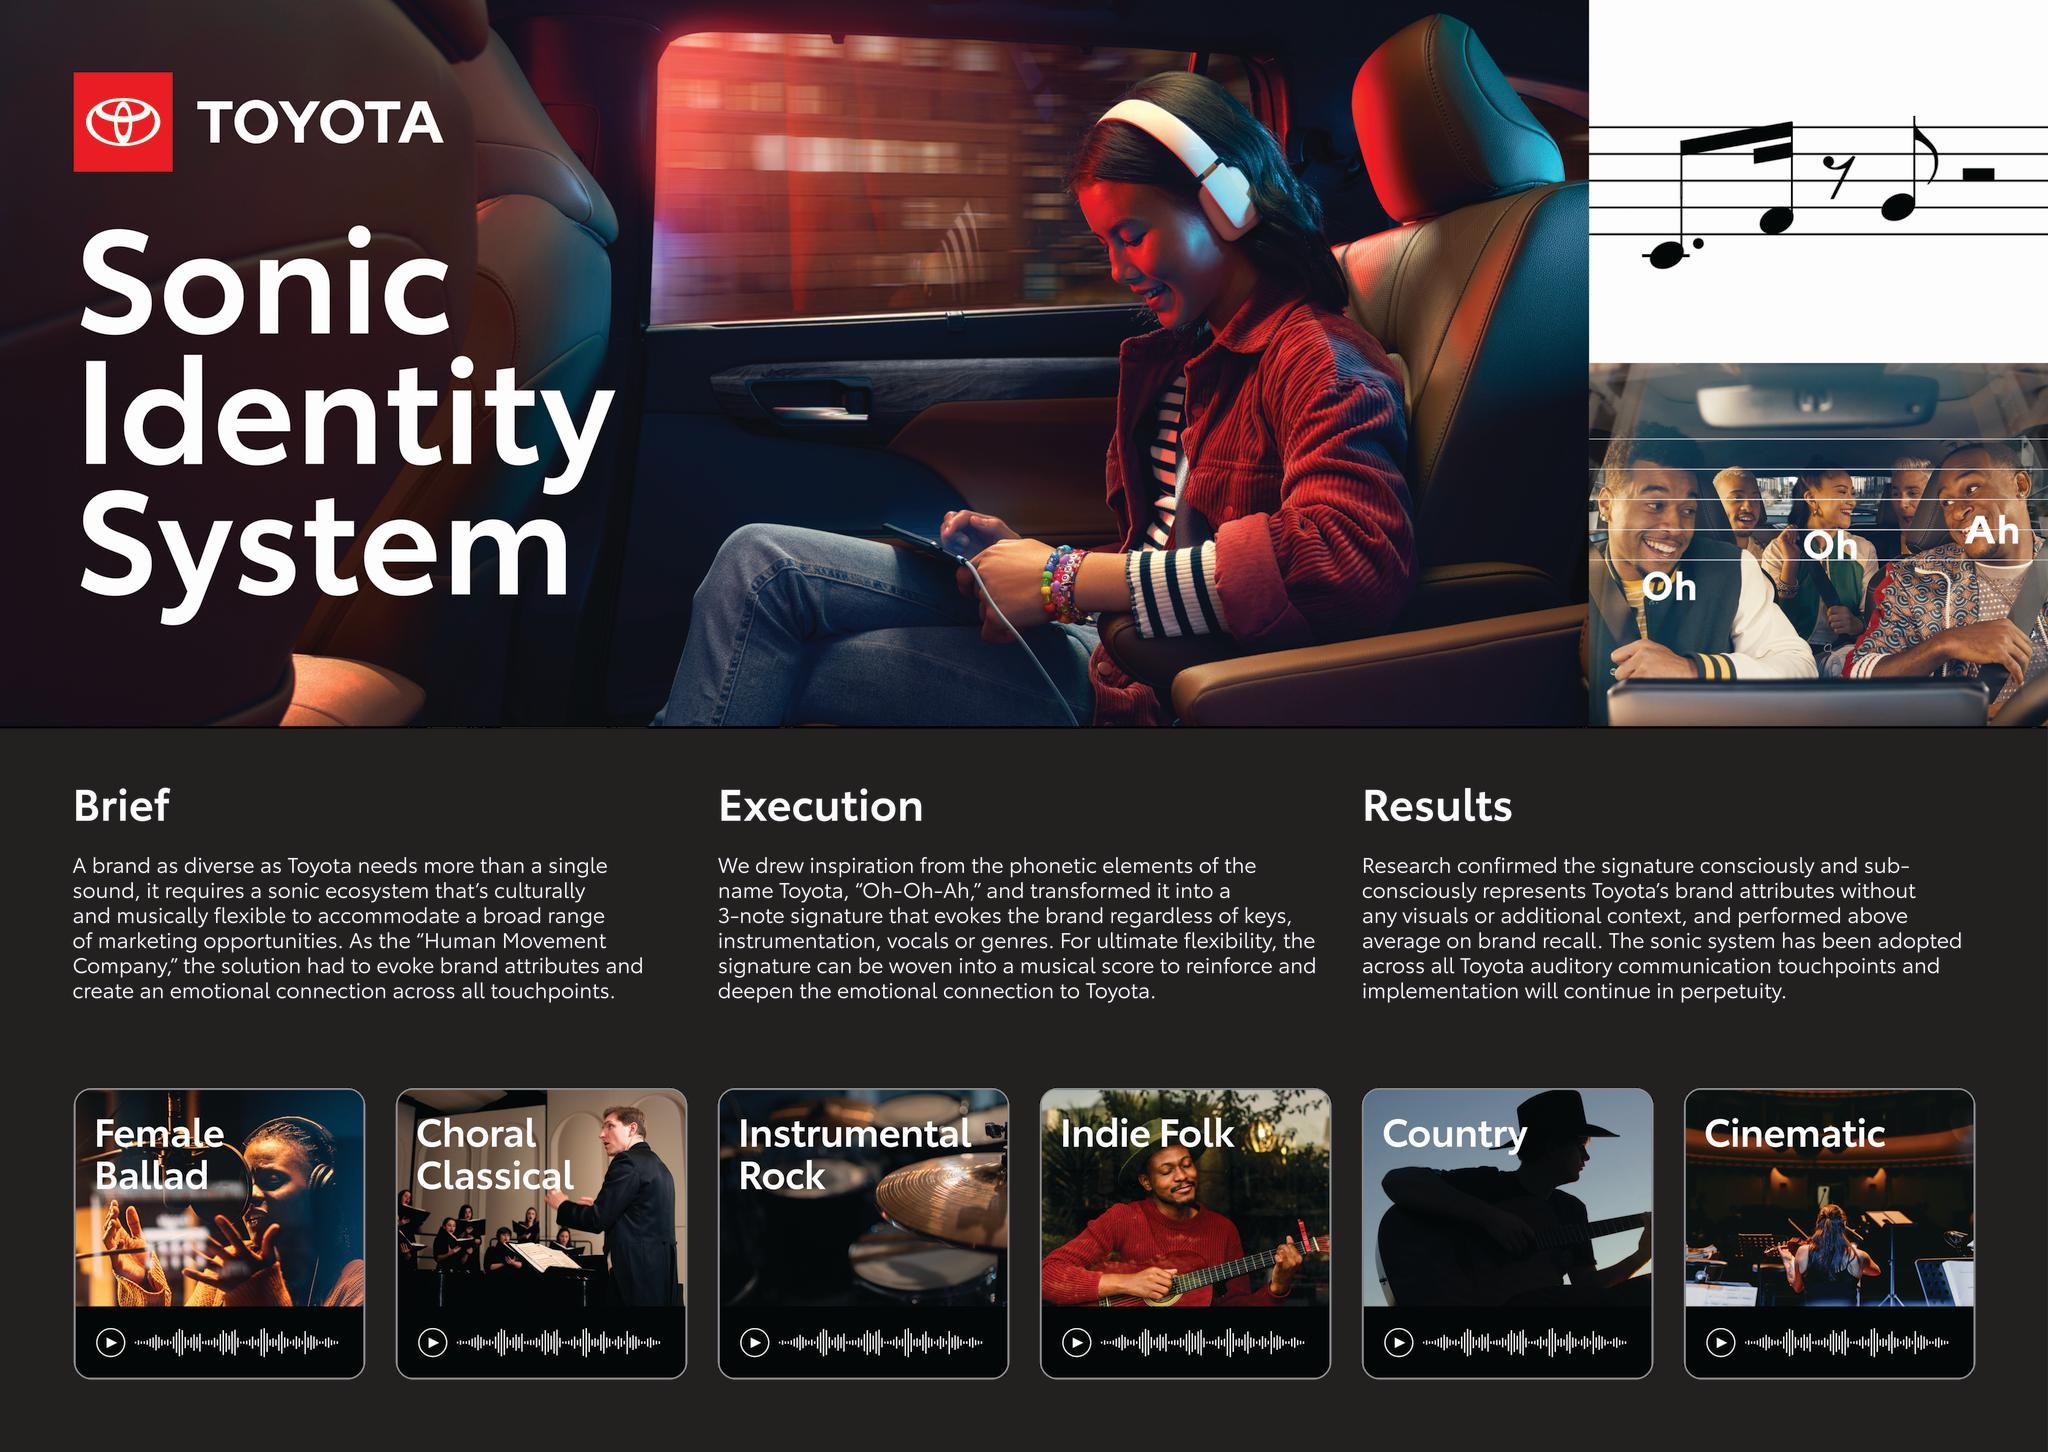 Toyota Sonic Identity System